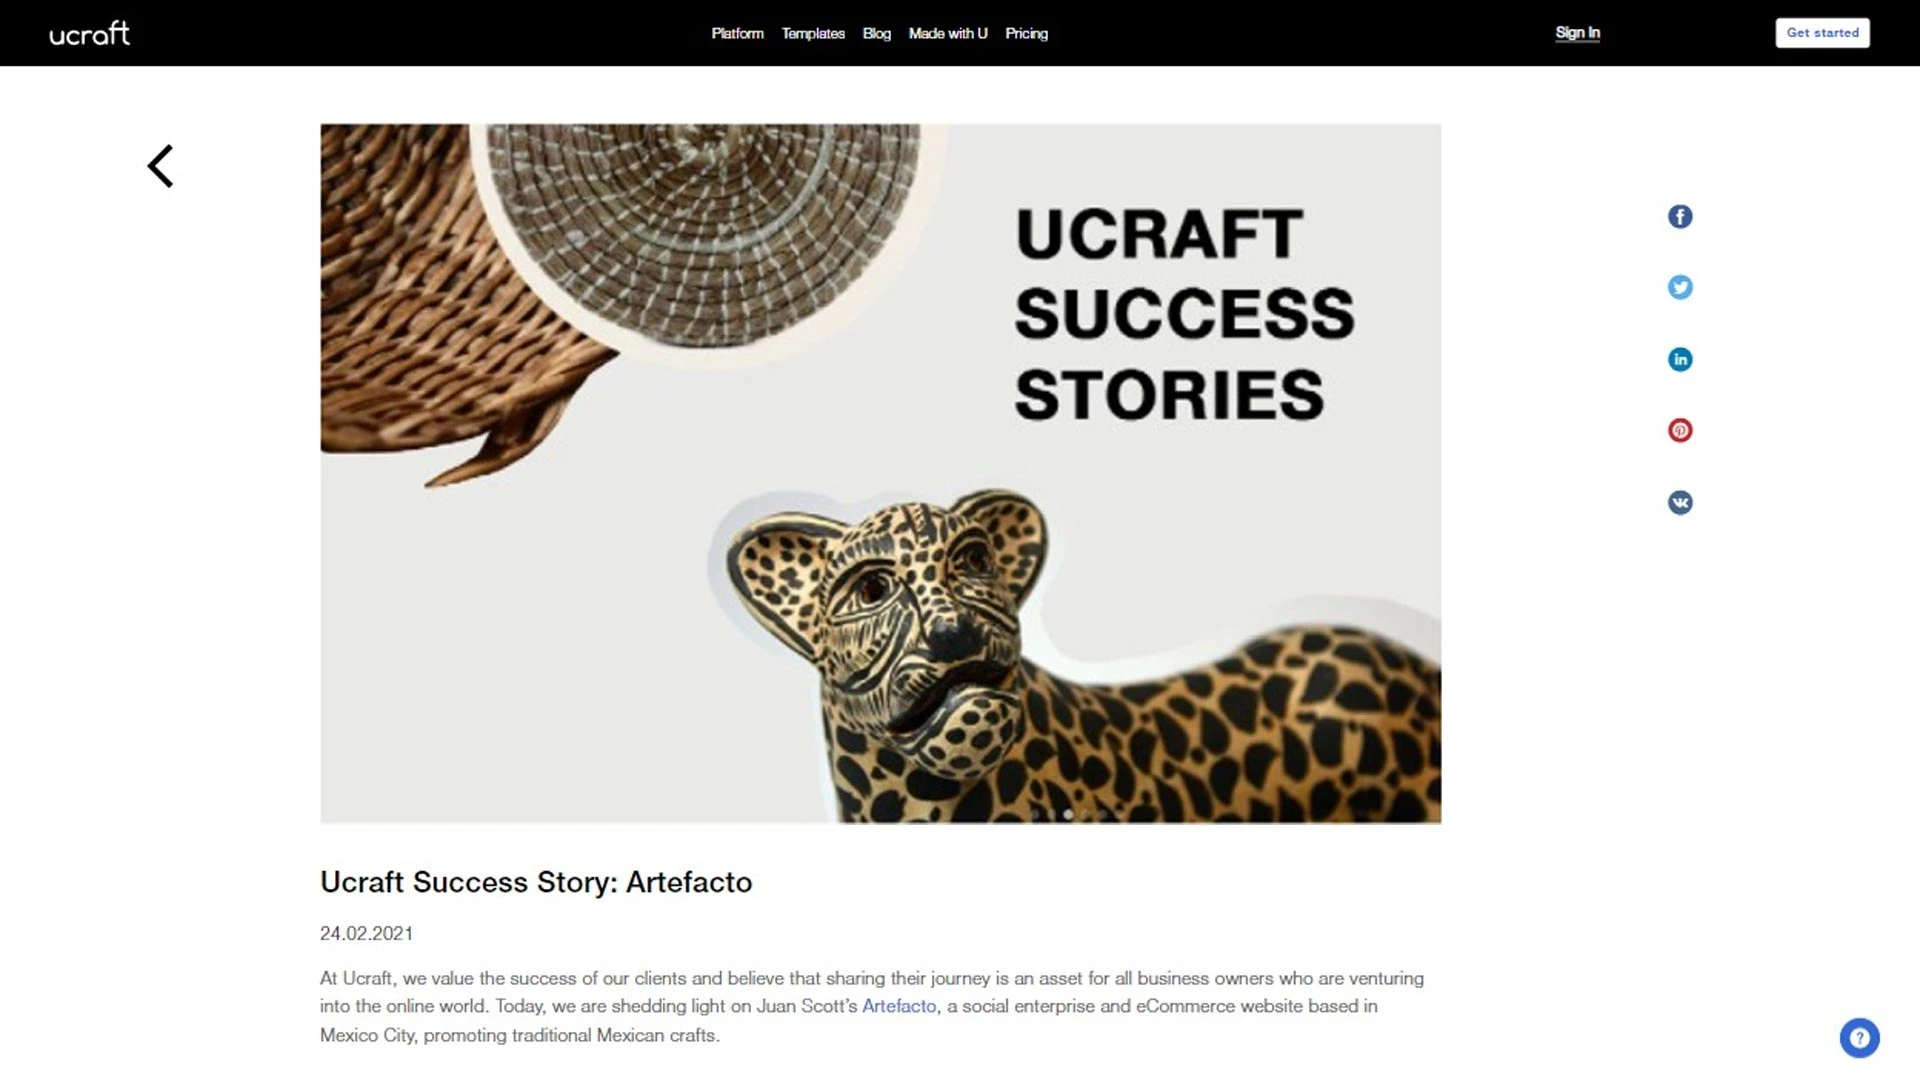 Ucraft success story